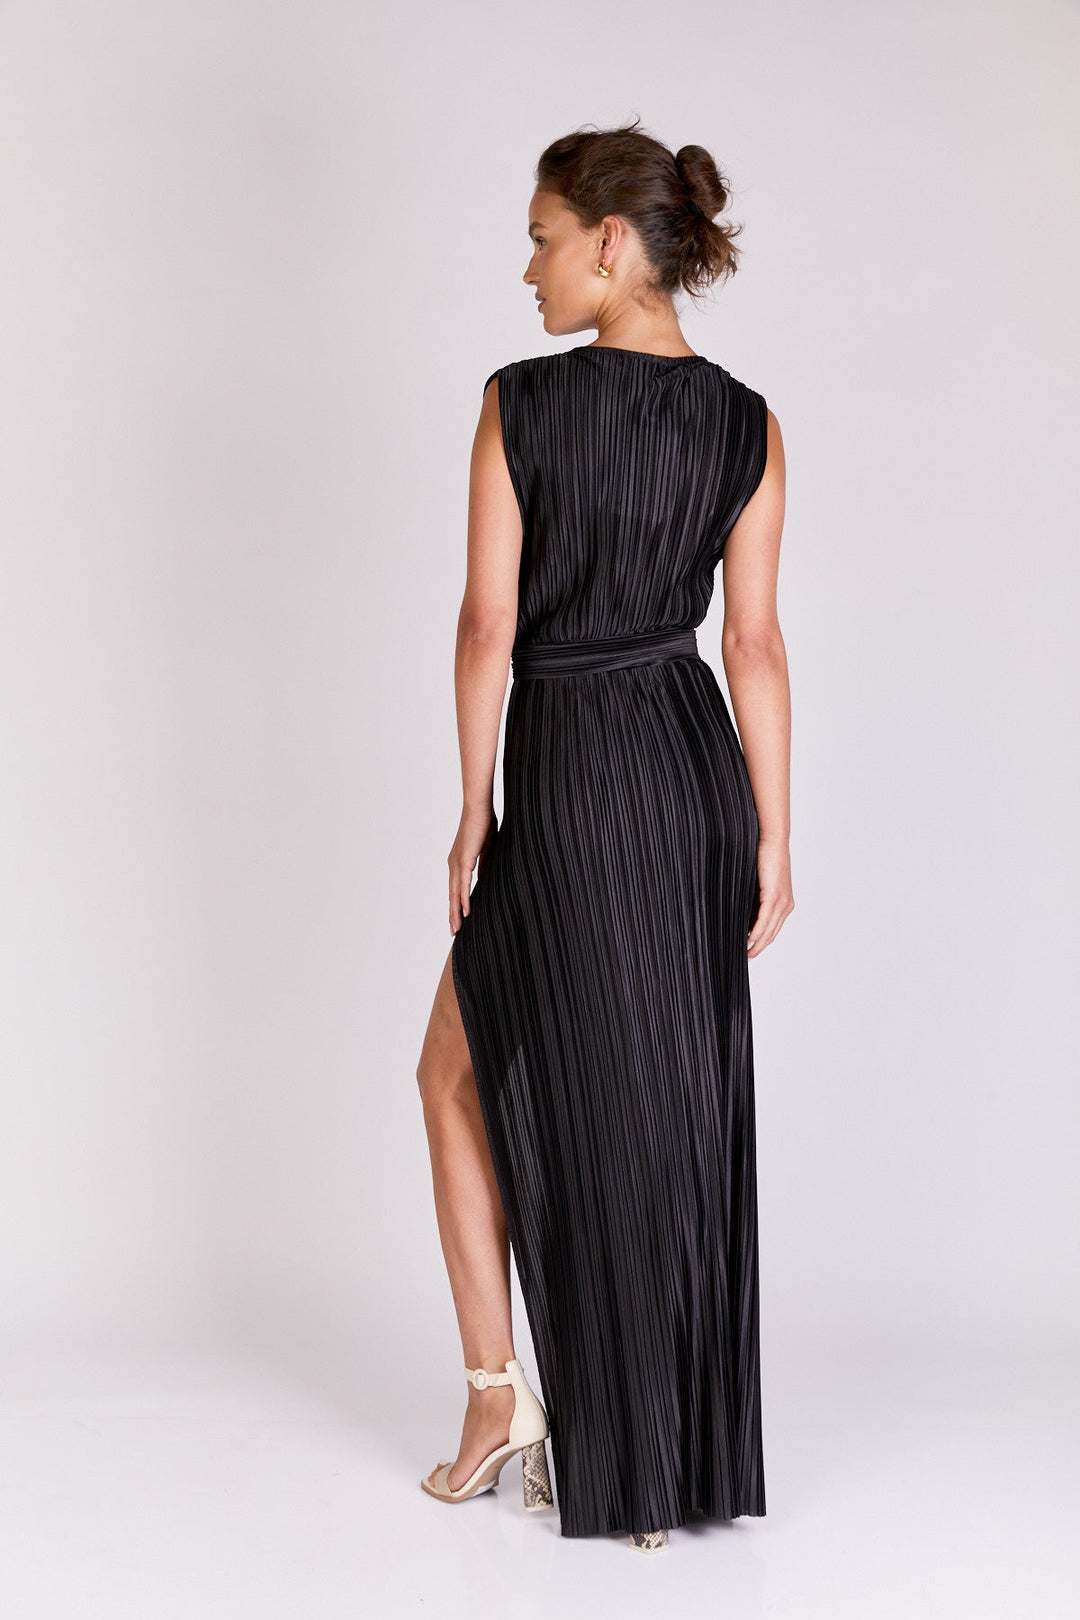 שמלת סלינה בצבע שחור - Neta Efrati